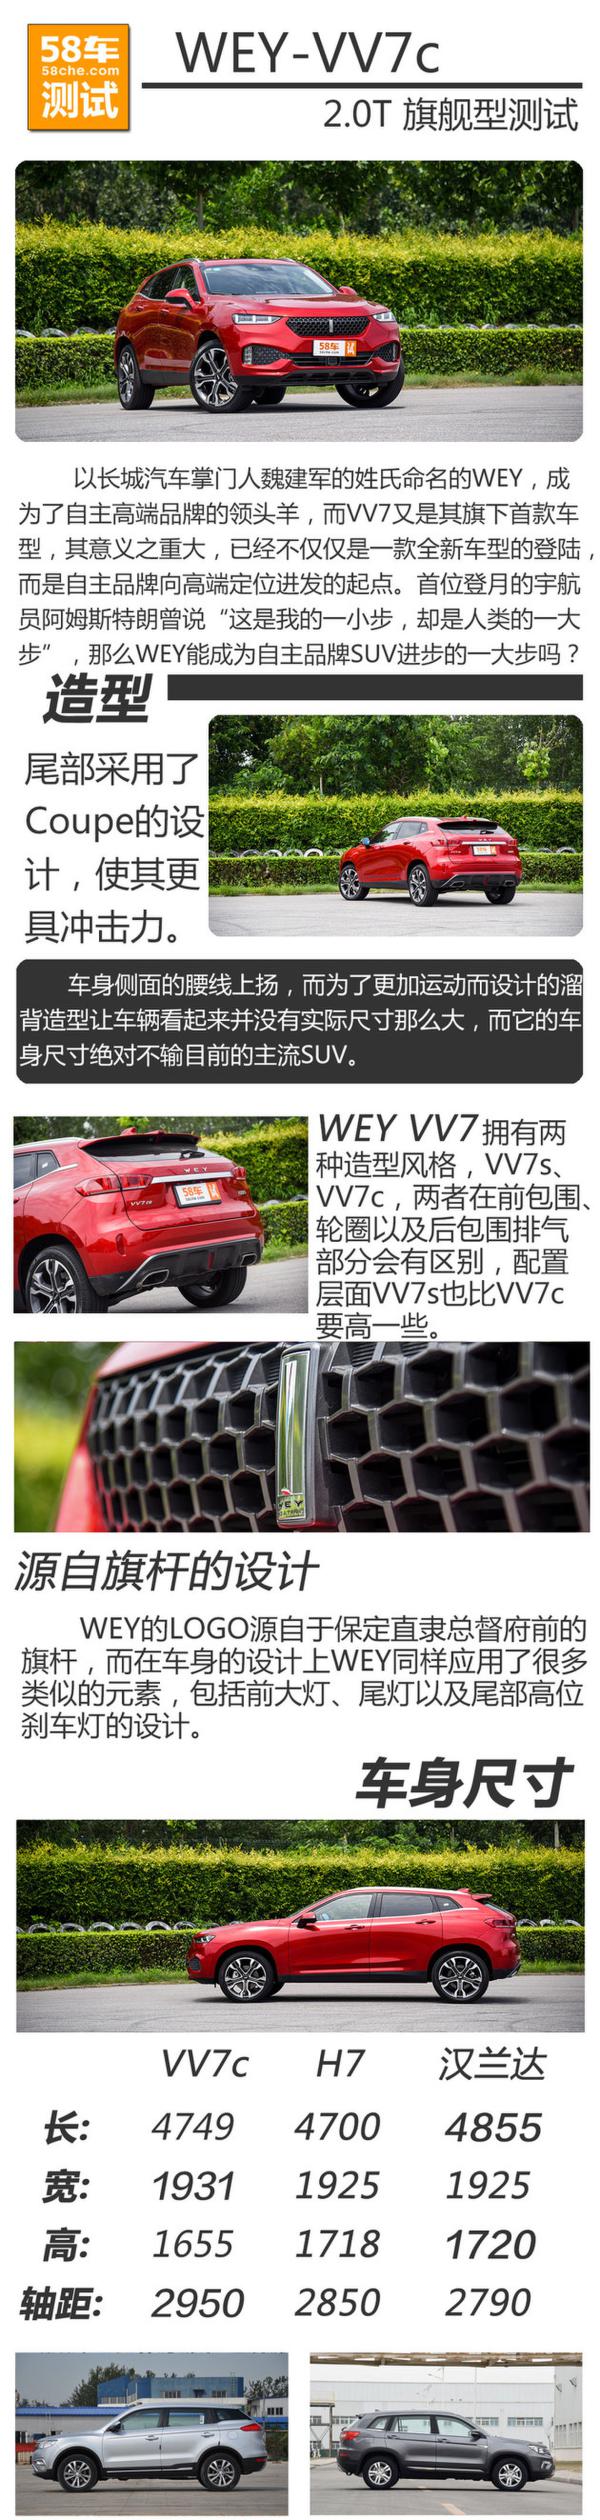 长城WEY VV7c测试 自主豪华SUV开创者